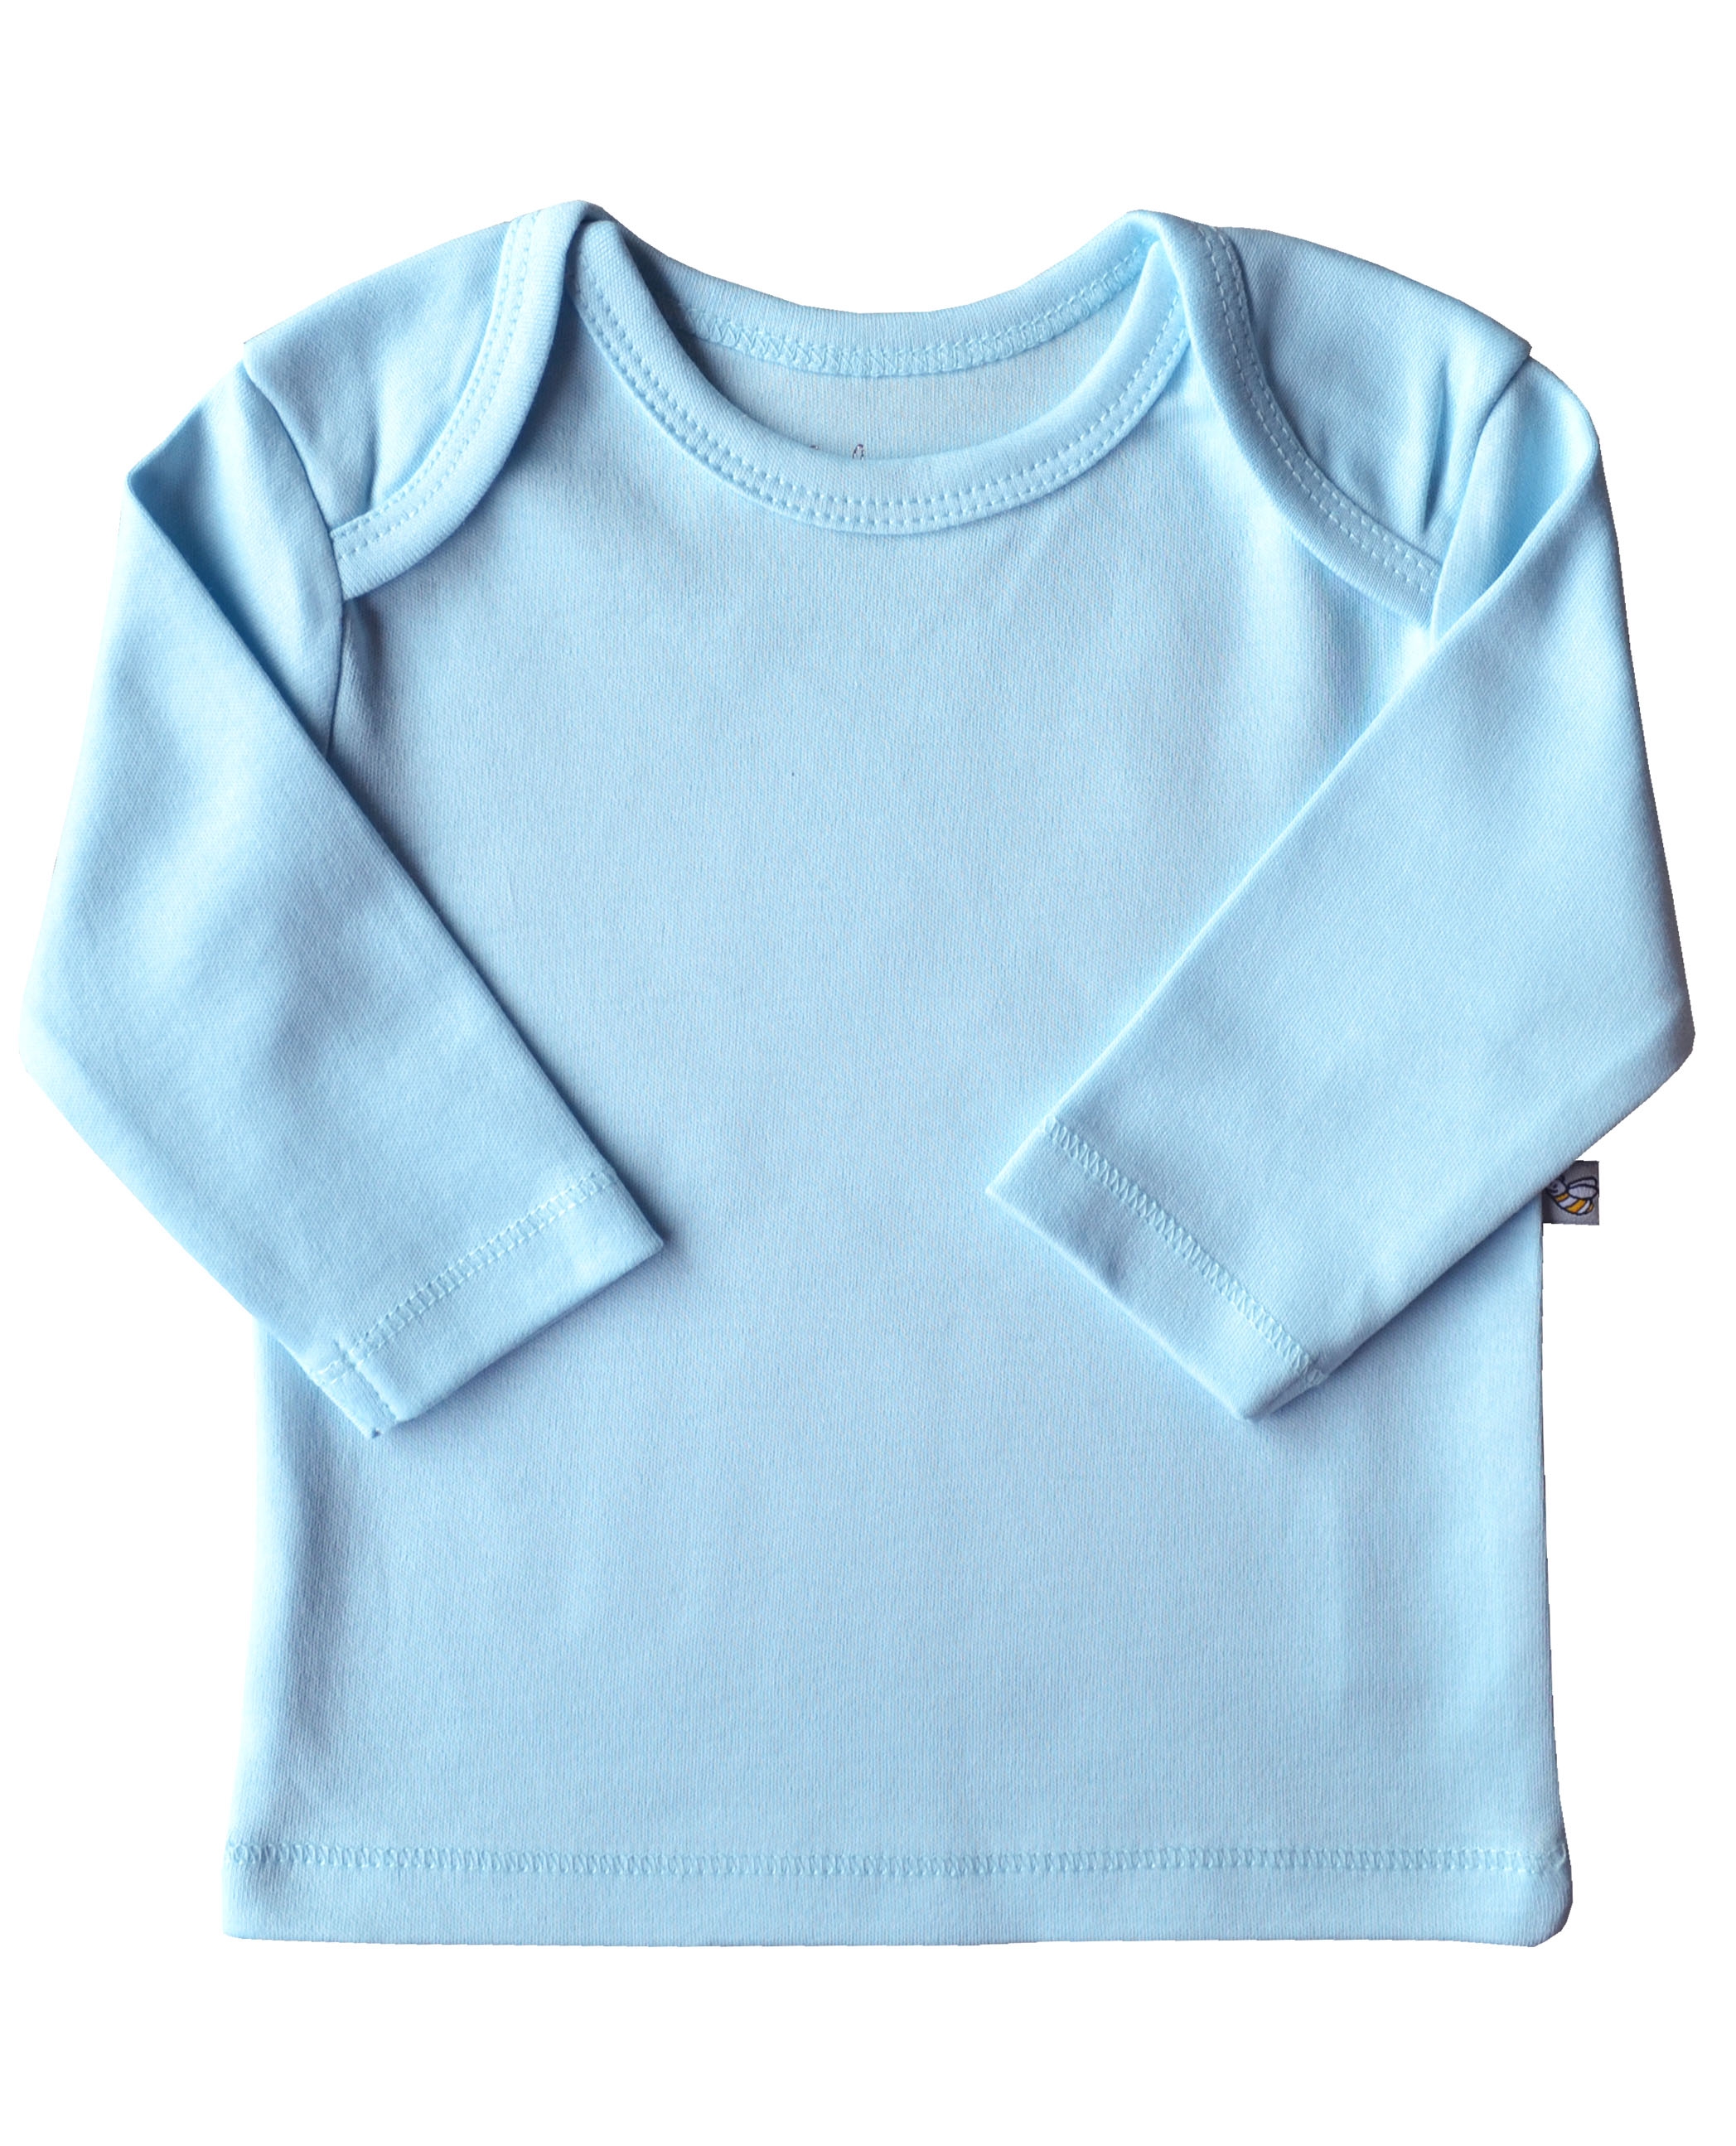 Babeez | Blue Long Sleeve Top (100% Cotton Interlock Biowash) undefined